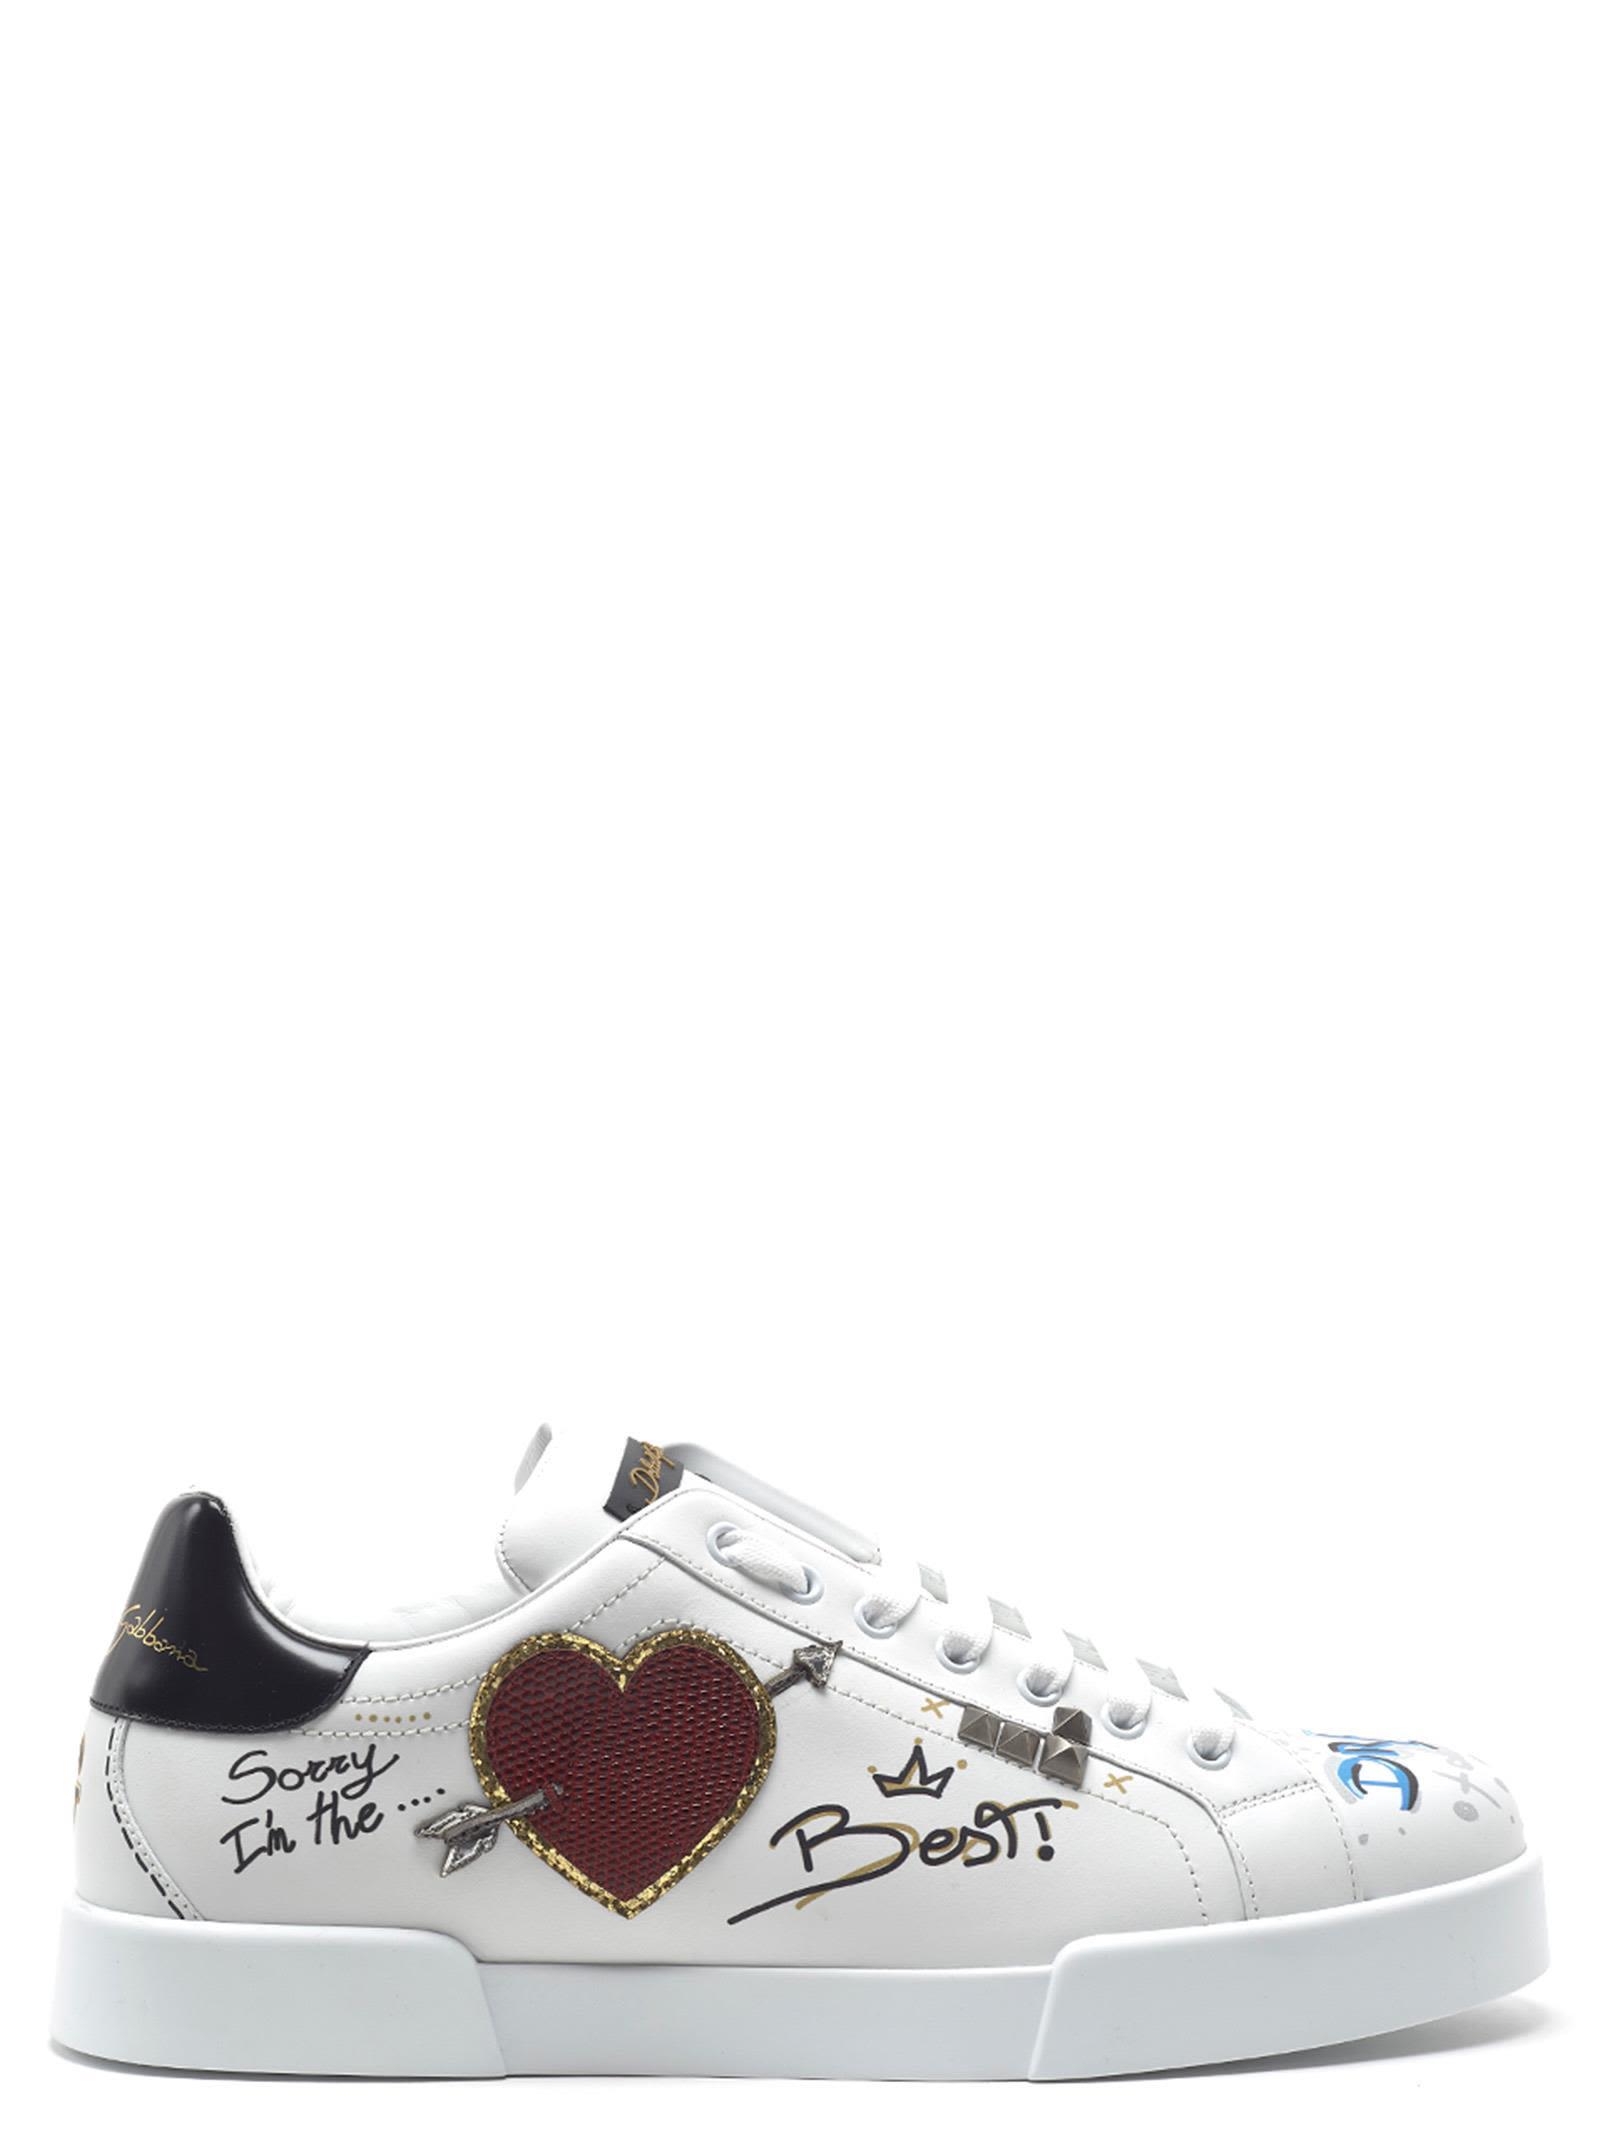 Dolce & Gabbana Portofino Graffiti Sneakers In Multicolor | ModeSens